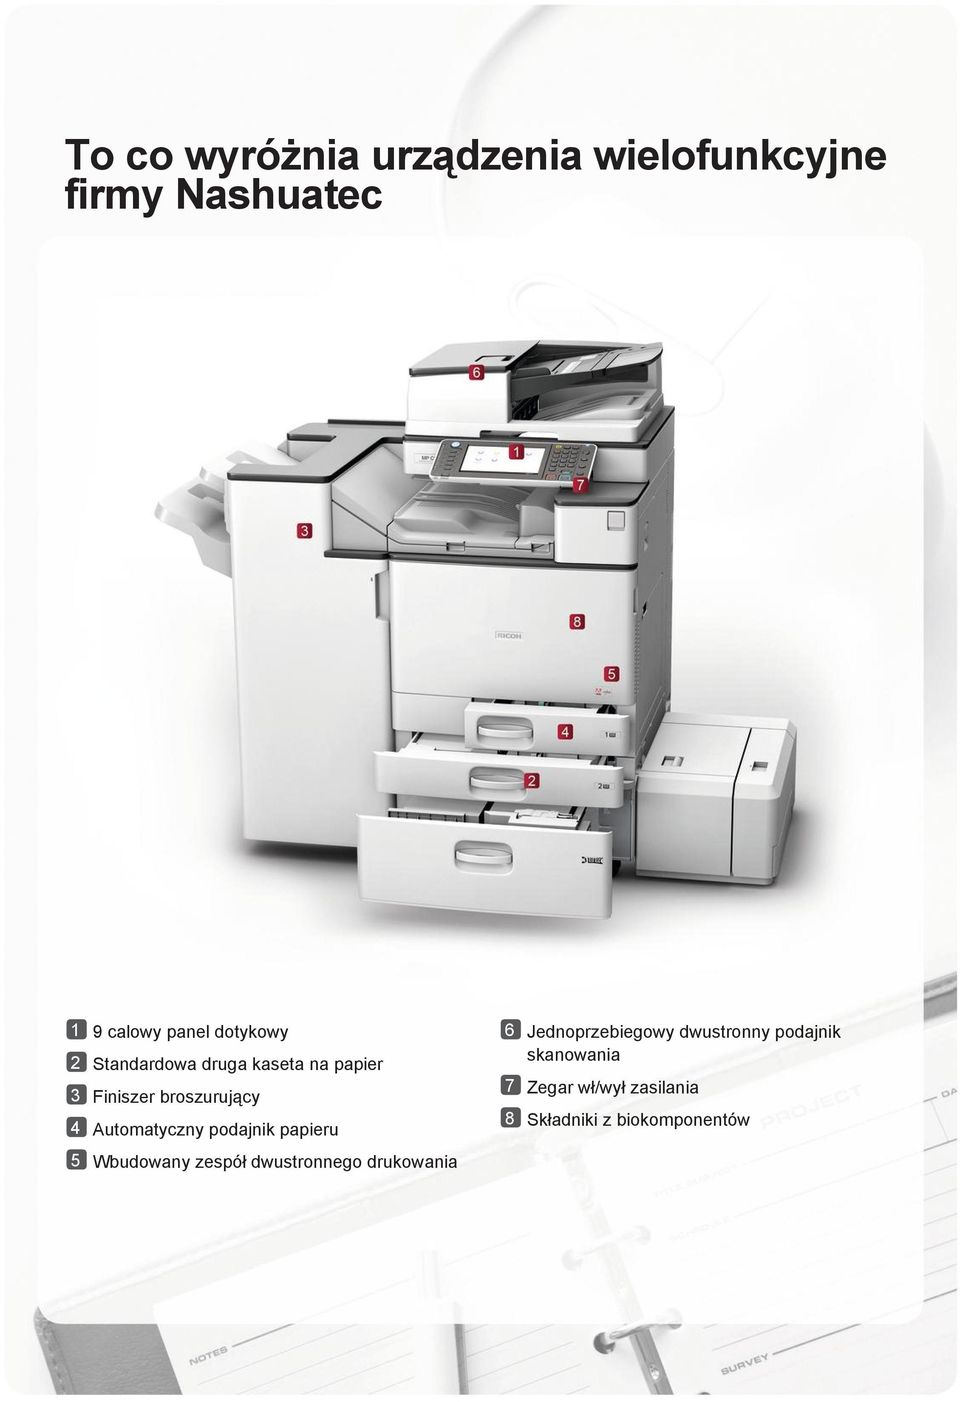 Automatyczny podajnik papieru 5 Wbudowany zespół dwustronnego drukowania 6